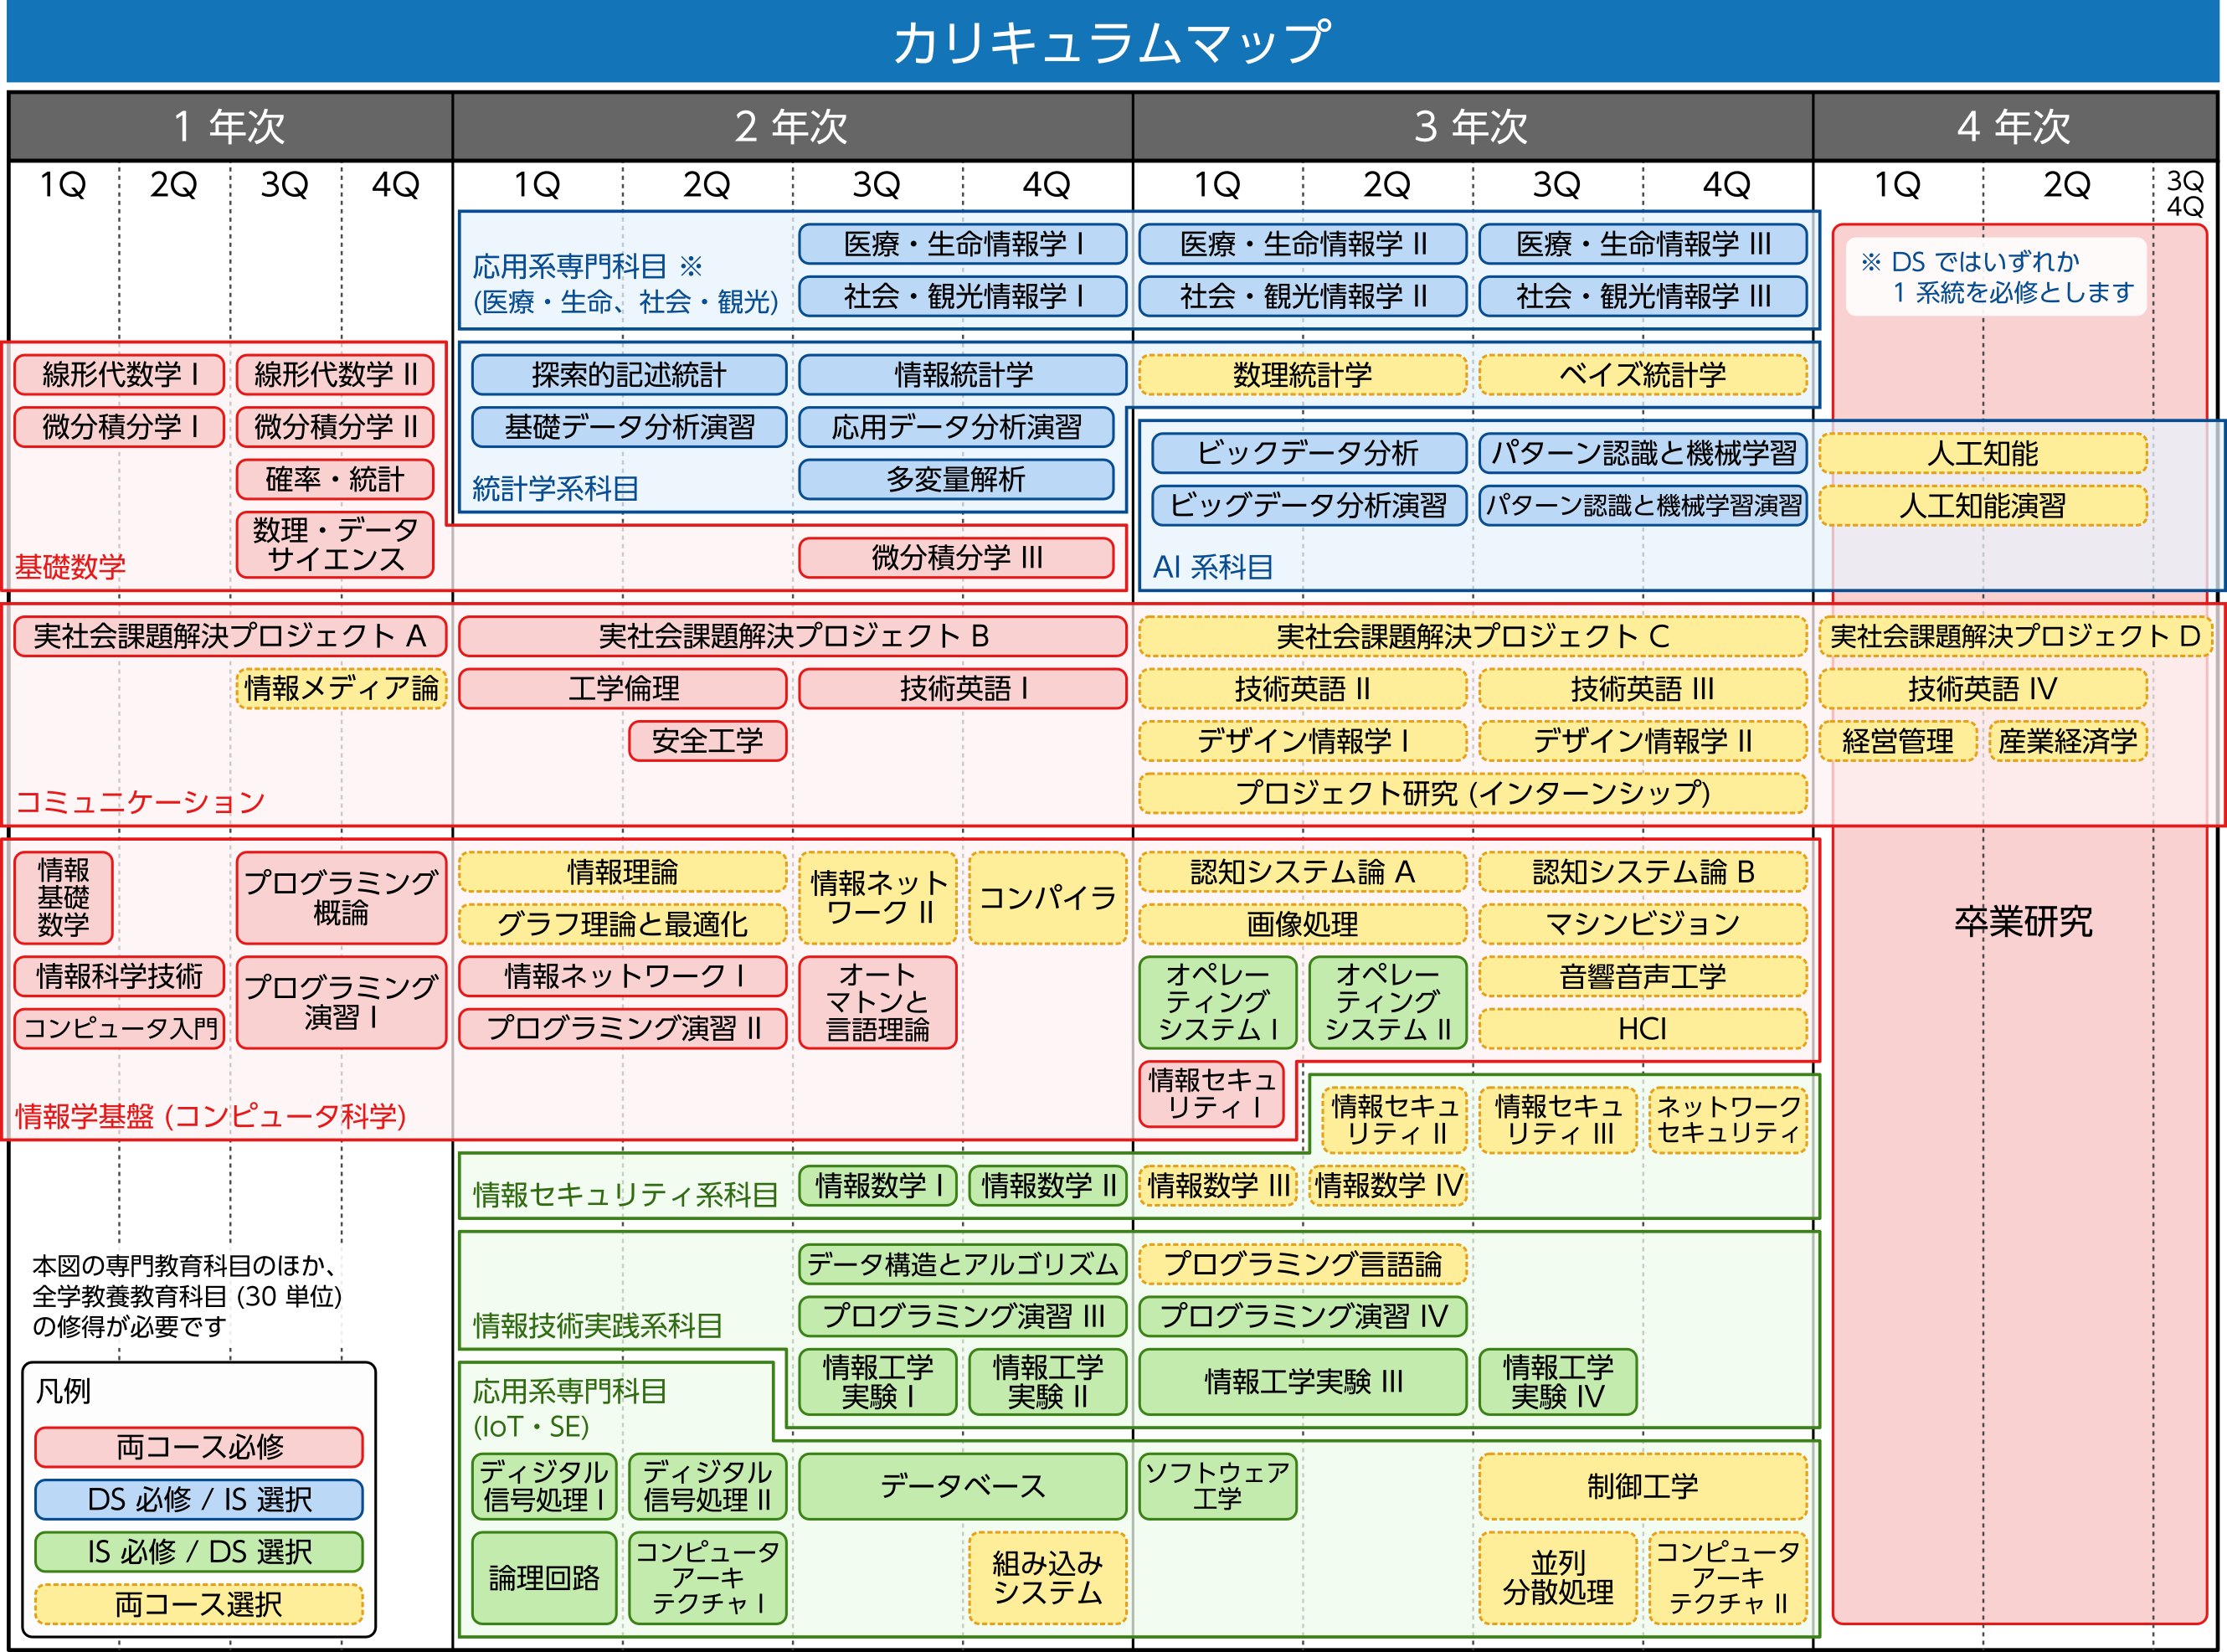 長崎大学情報データ科学部 カリキュラムマップ